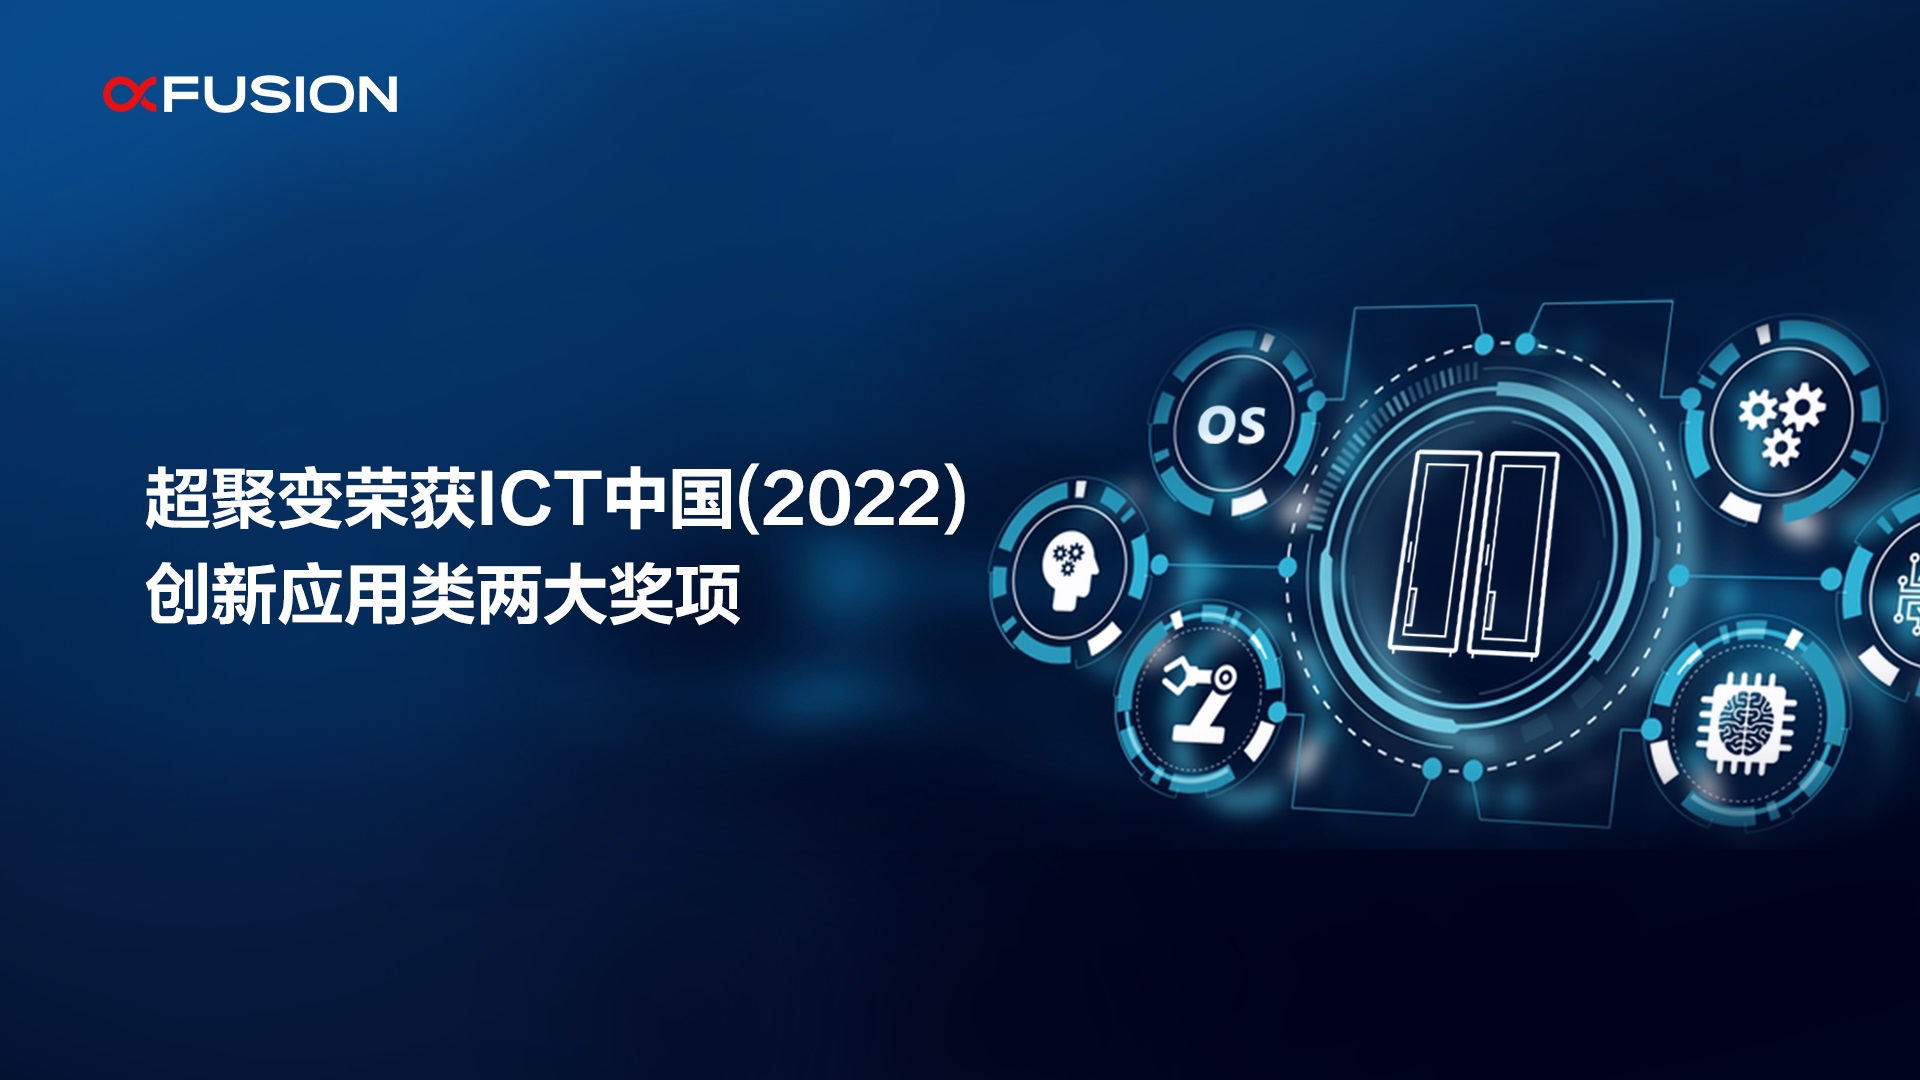 超聚变荣获“ICT中国（2022）典型案例”创新应用类两项大奖